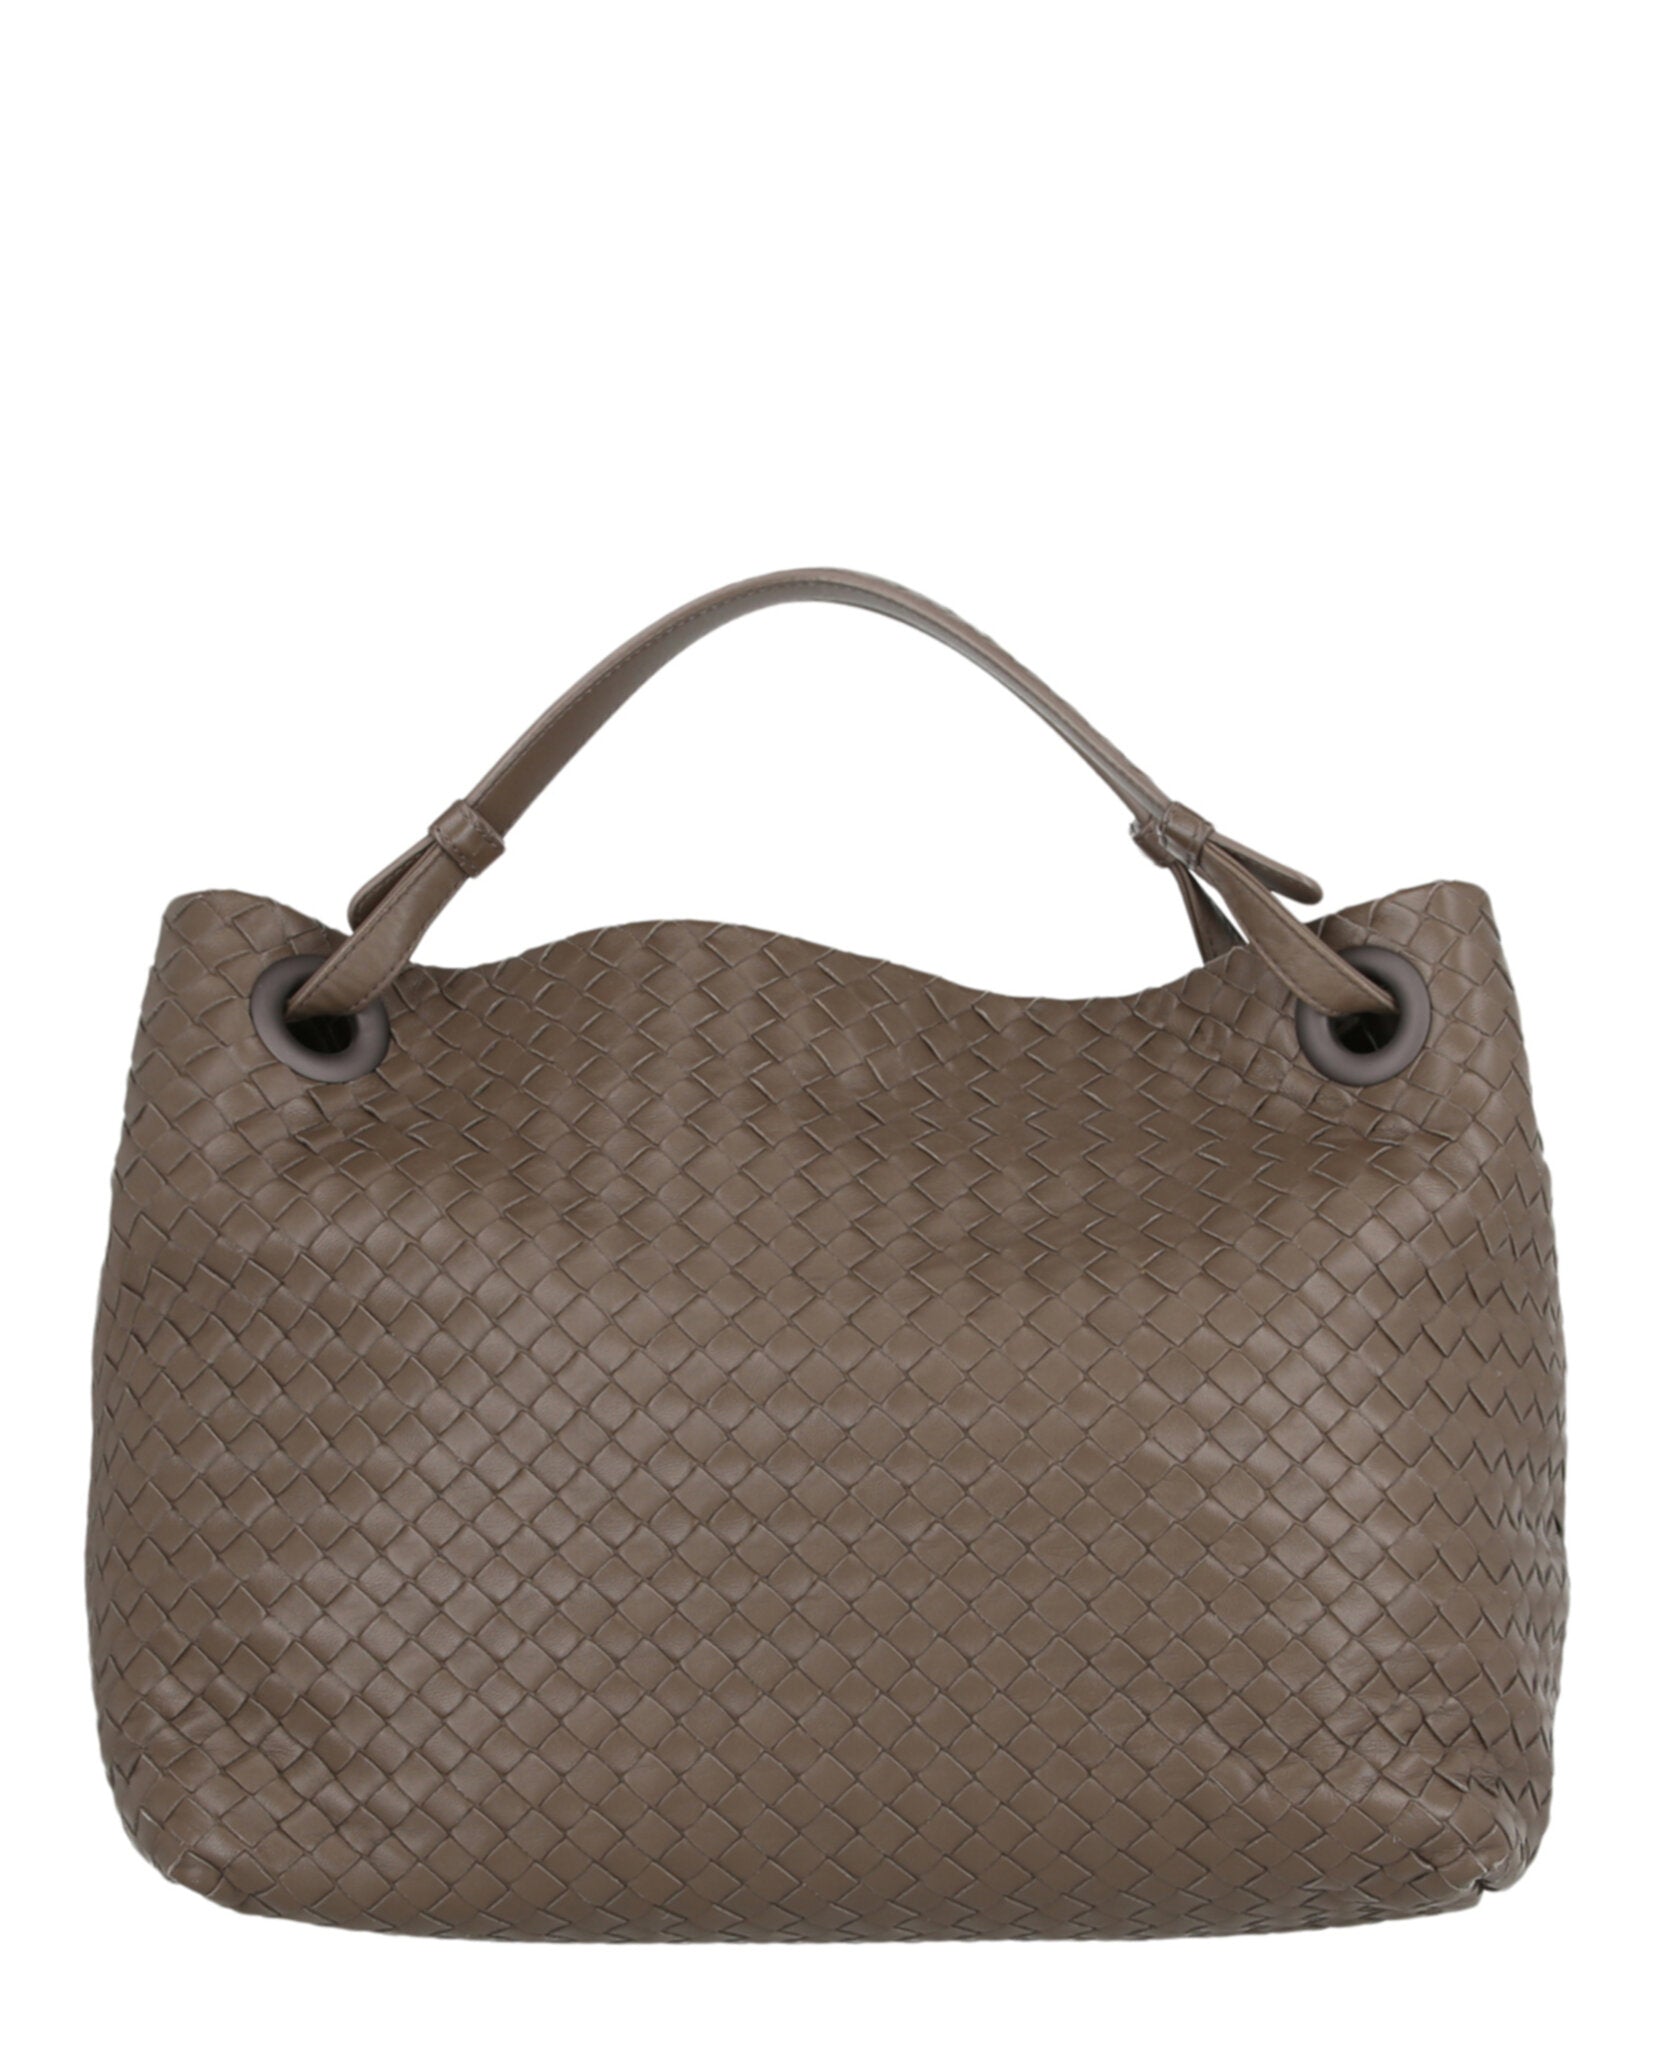 Bottega Veneta Bella Intrecciato Leather Tote Bag In Steel | ModeSens